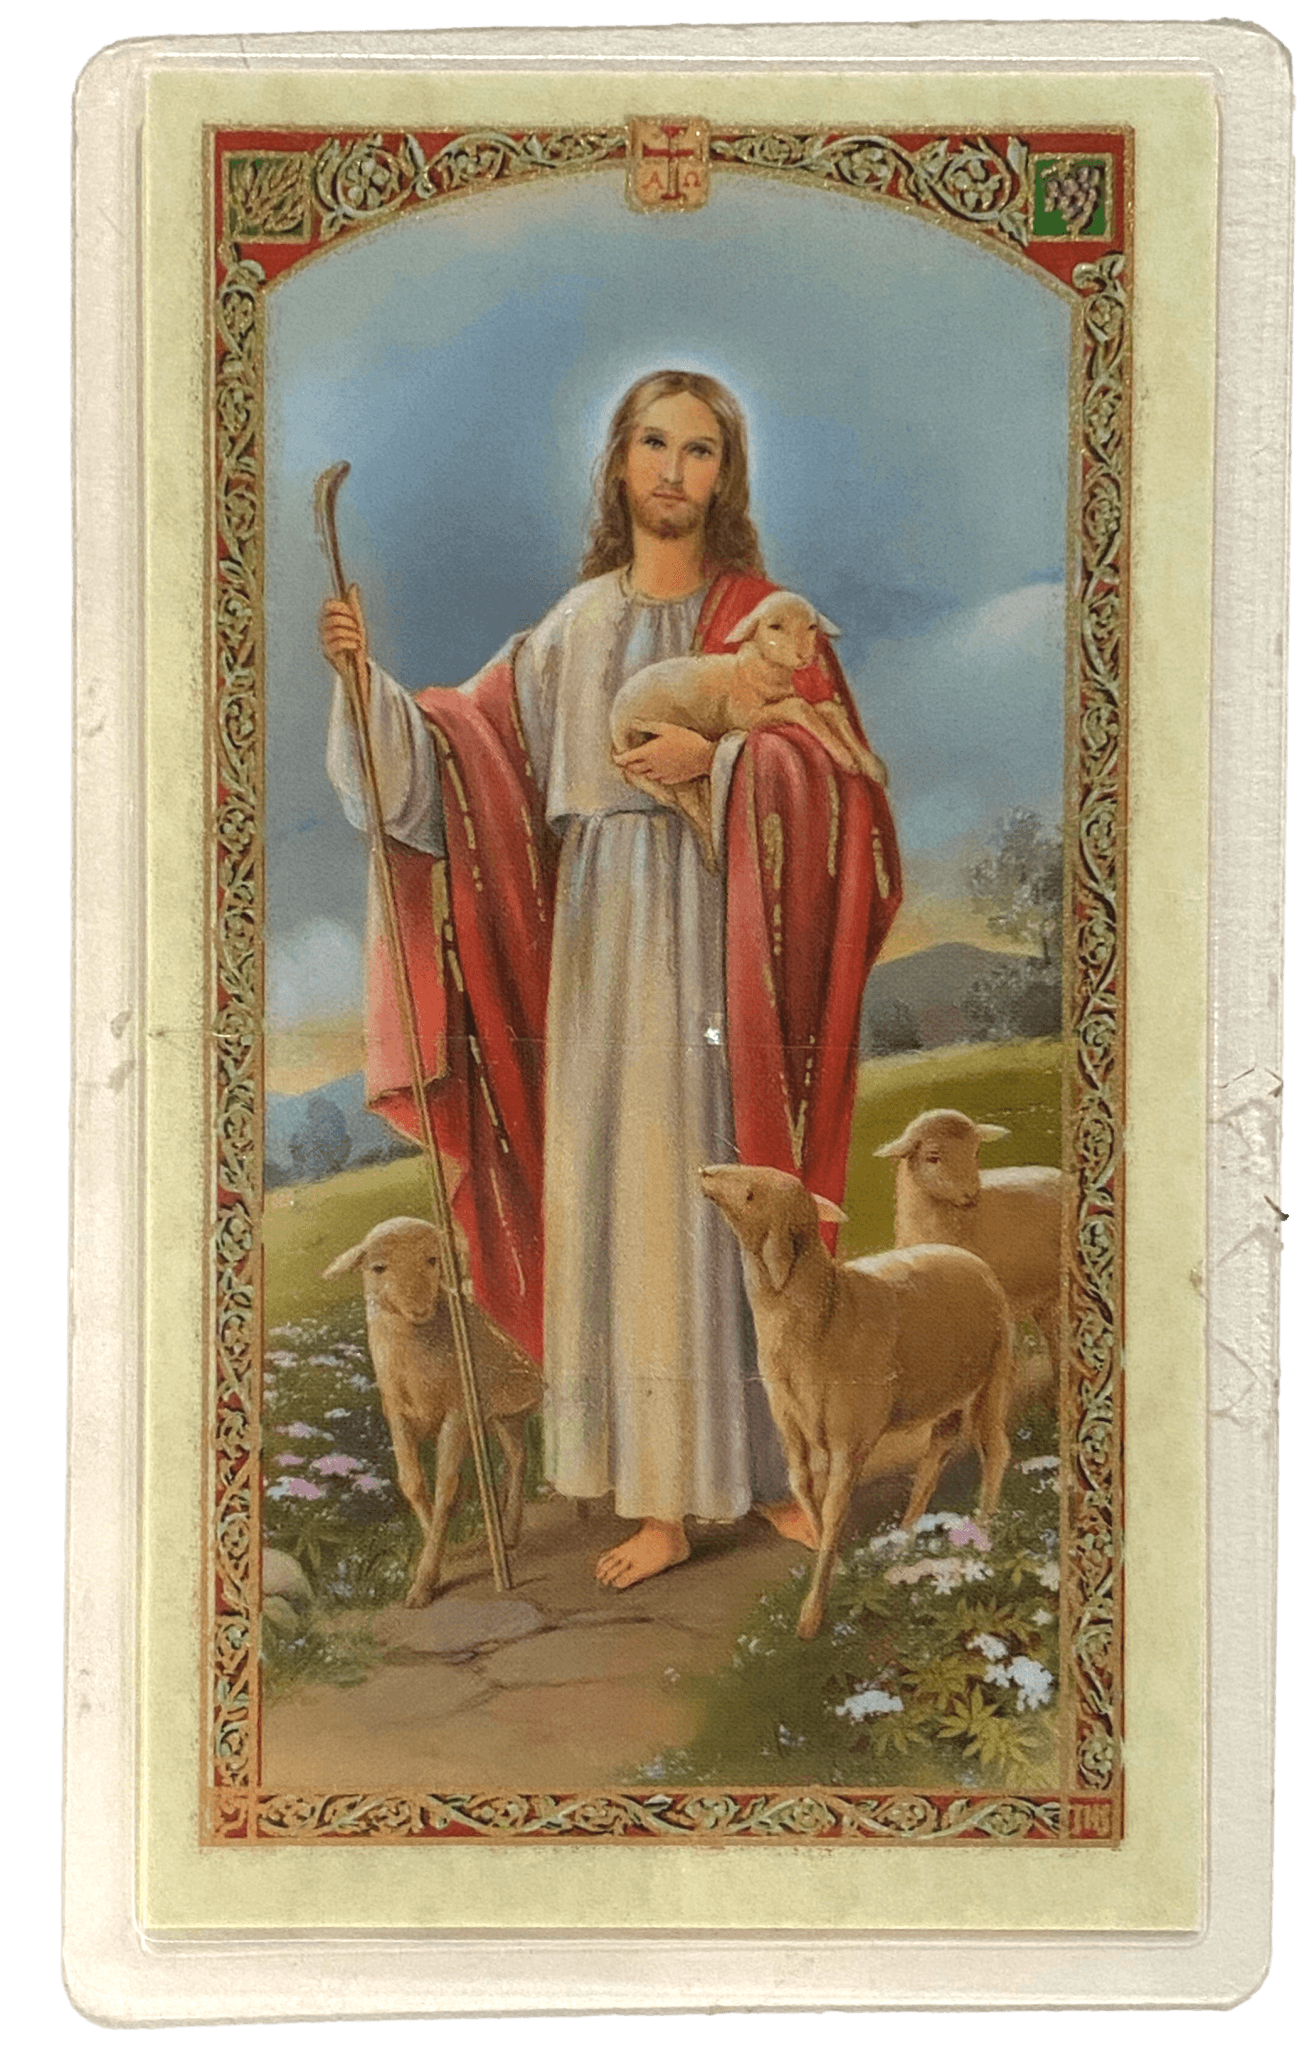 Prayer Card El Credo de Los Apostoles SPANISH Laminated HC9-082S - Ysleta Mission Gift Shop- VOTED El Paso's Best Gift Shop